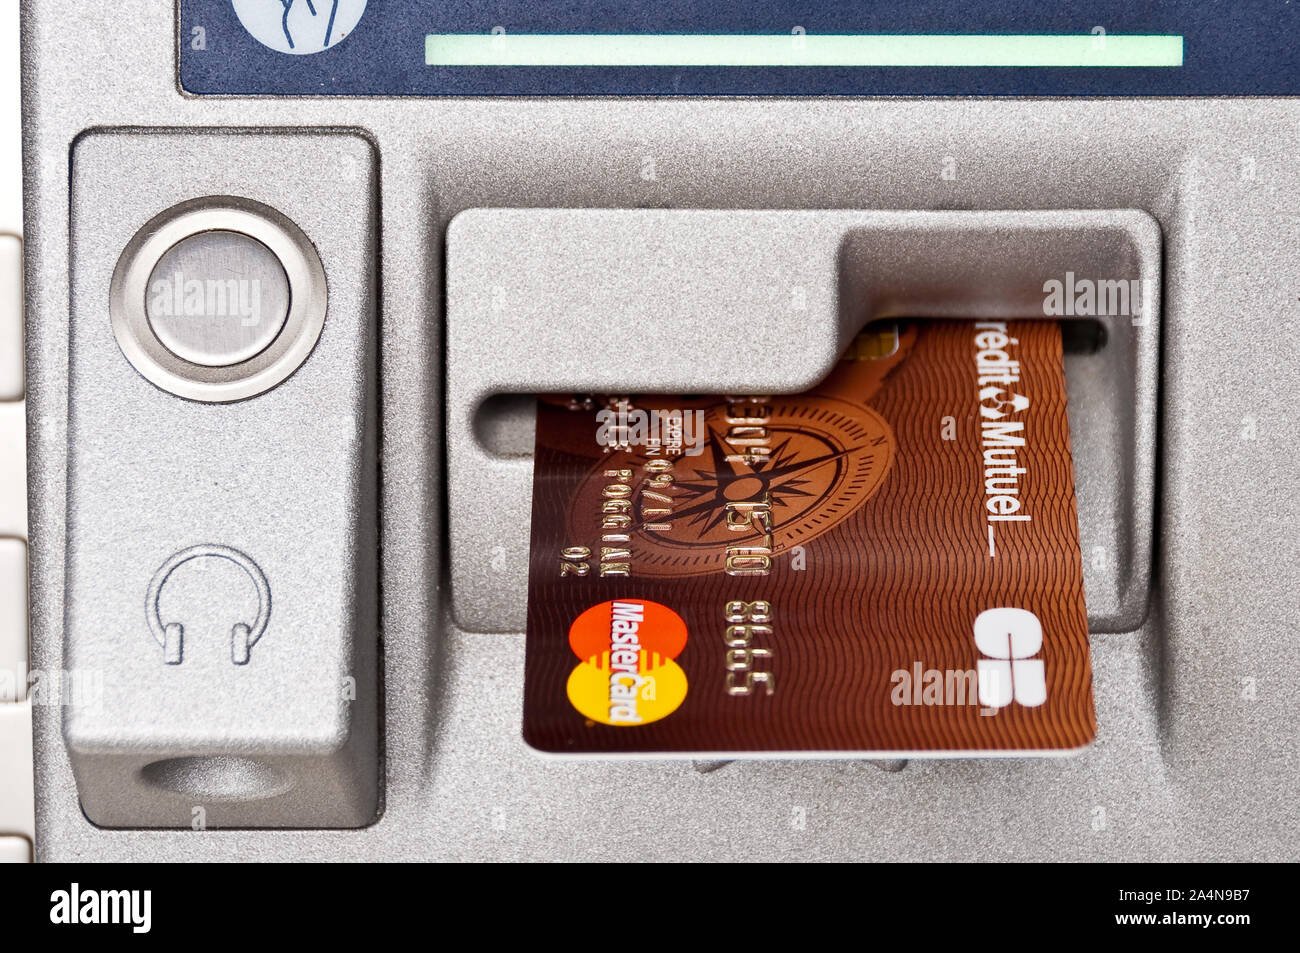 Nahaufnahme einer Mastercard Kreditkarte in einem ATM Geldautomaten in Fontainebleau, Frankreich Stockfoto